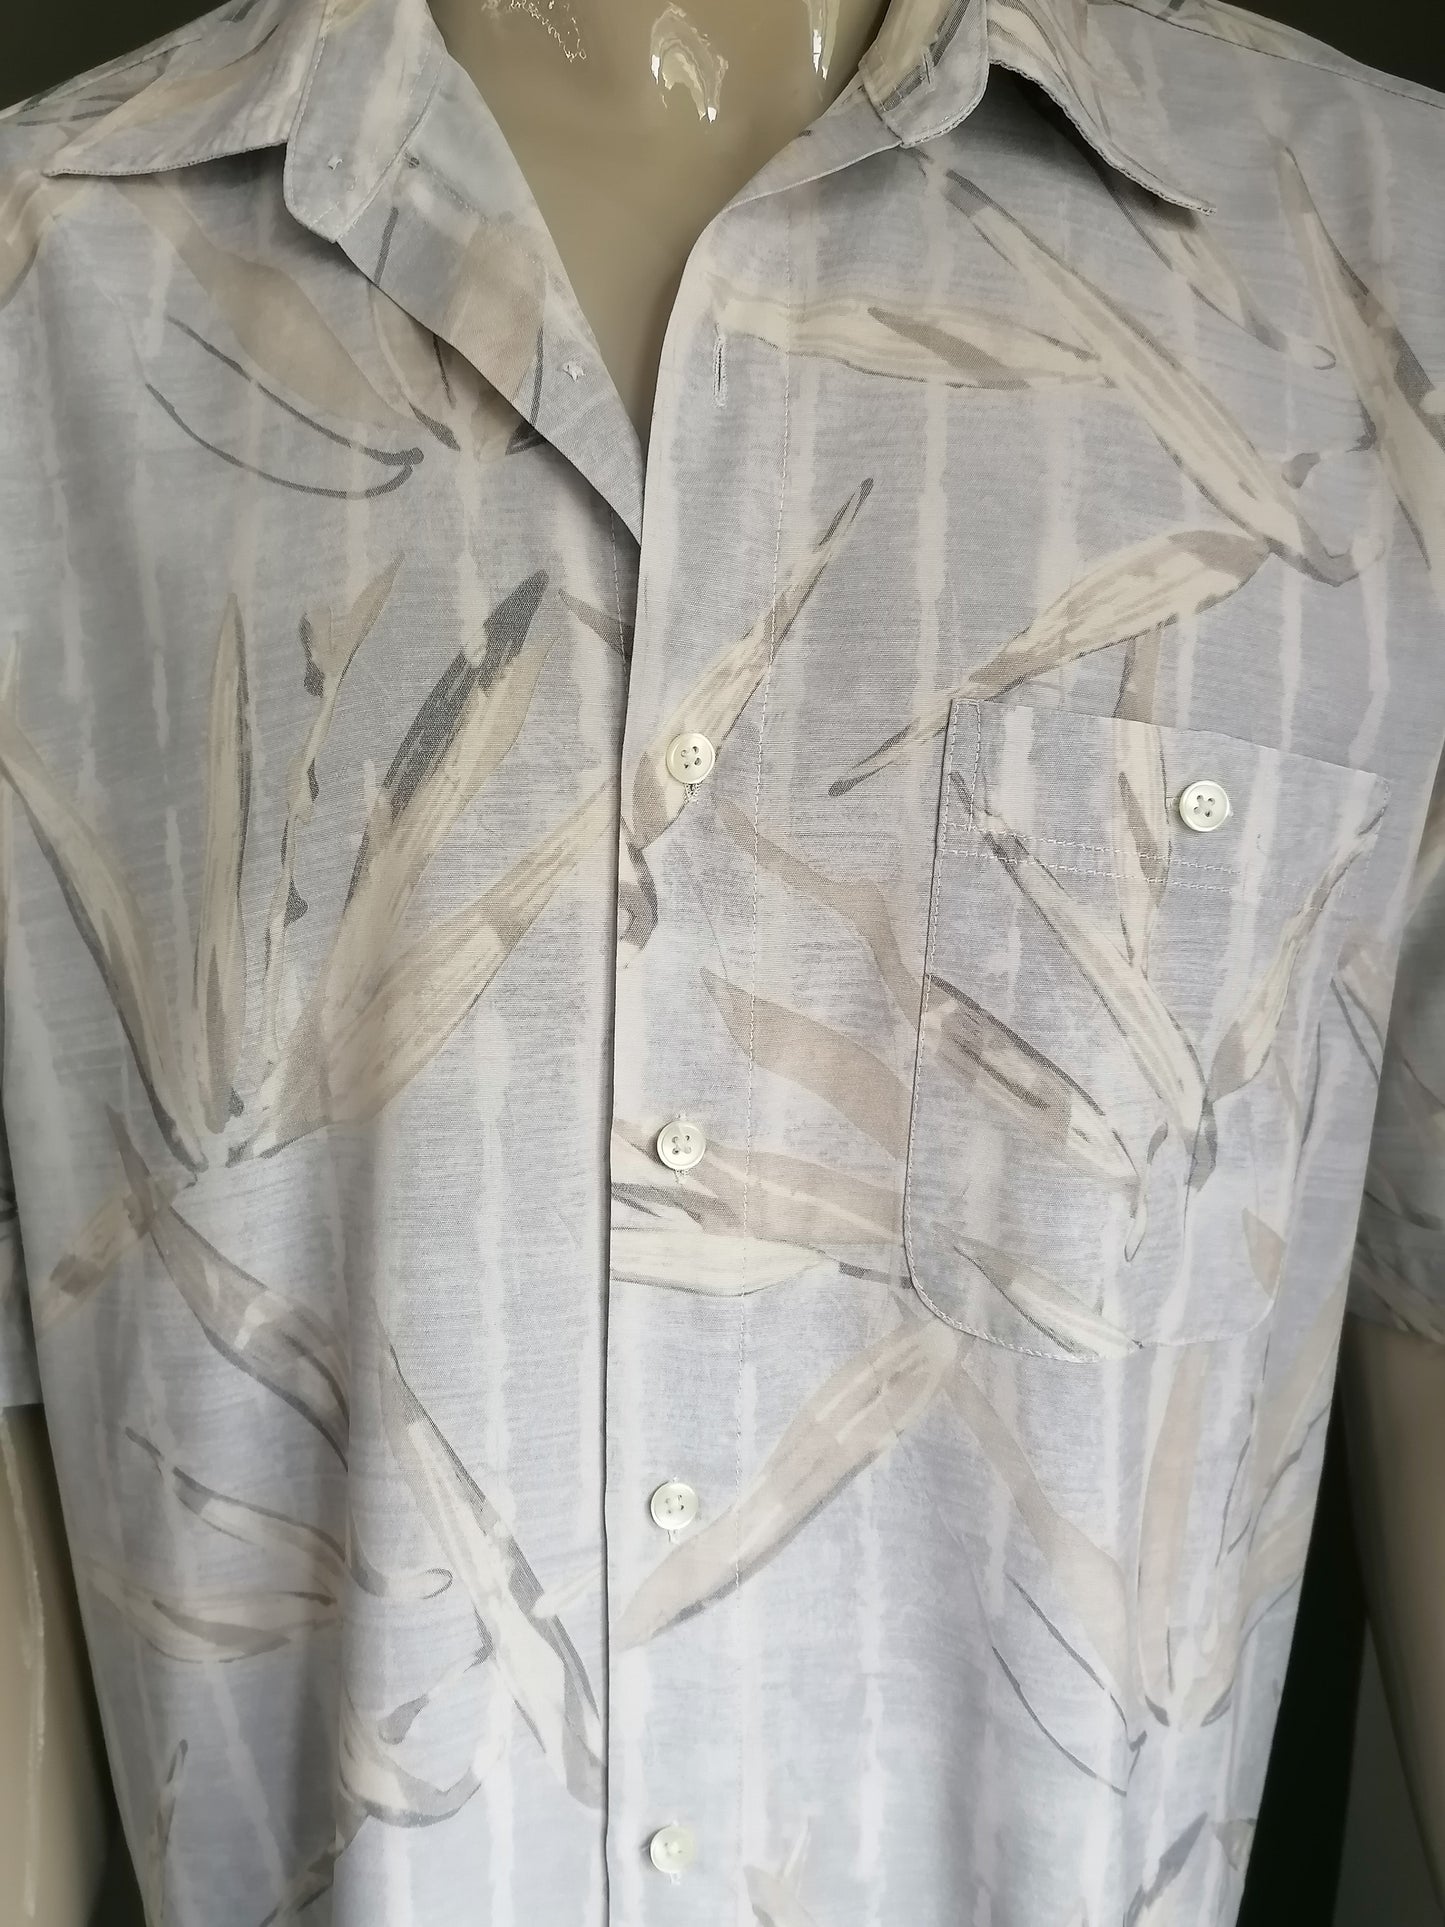 Vintage Jupiter -Shirt Kurzarm. Grauer Beige Druck. Größe xl.